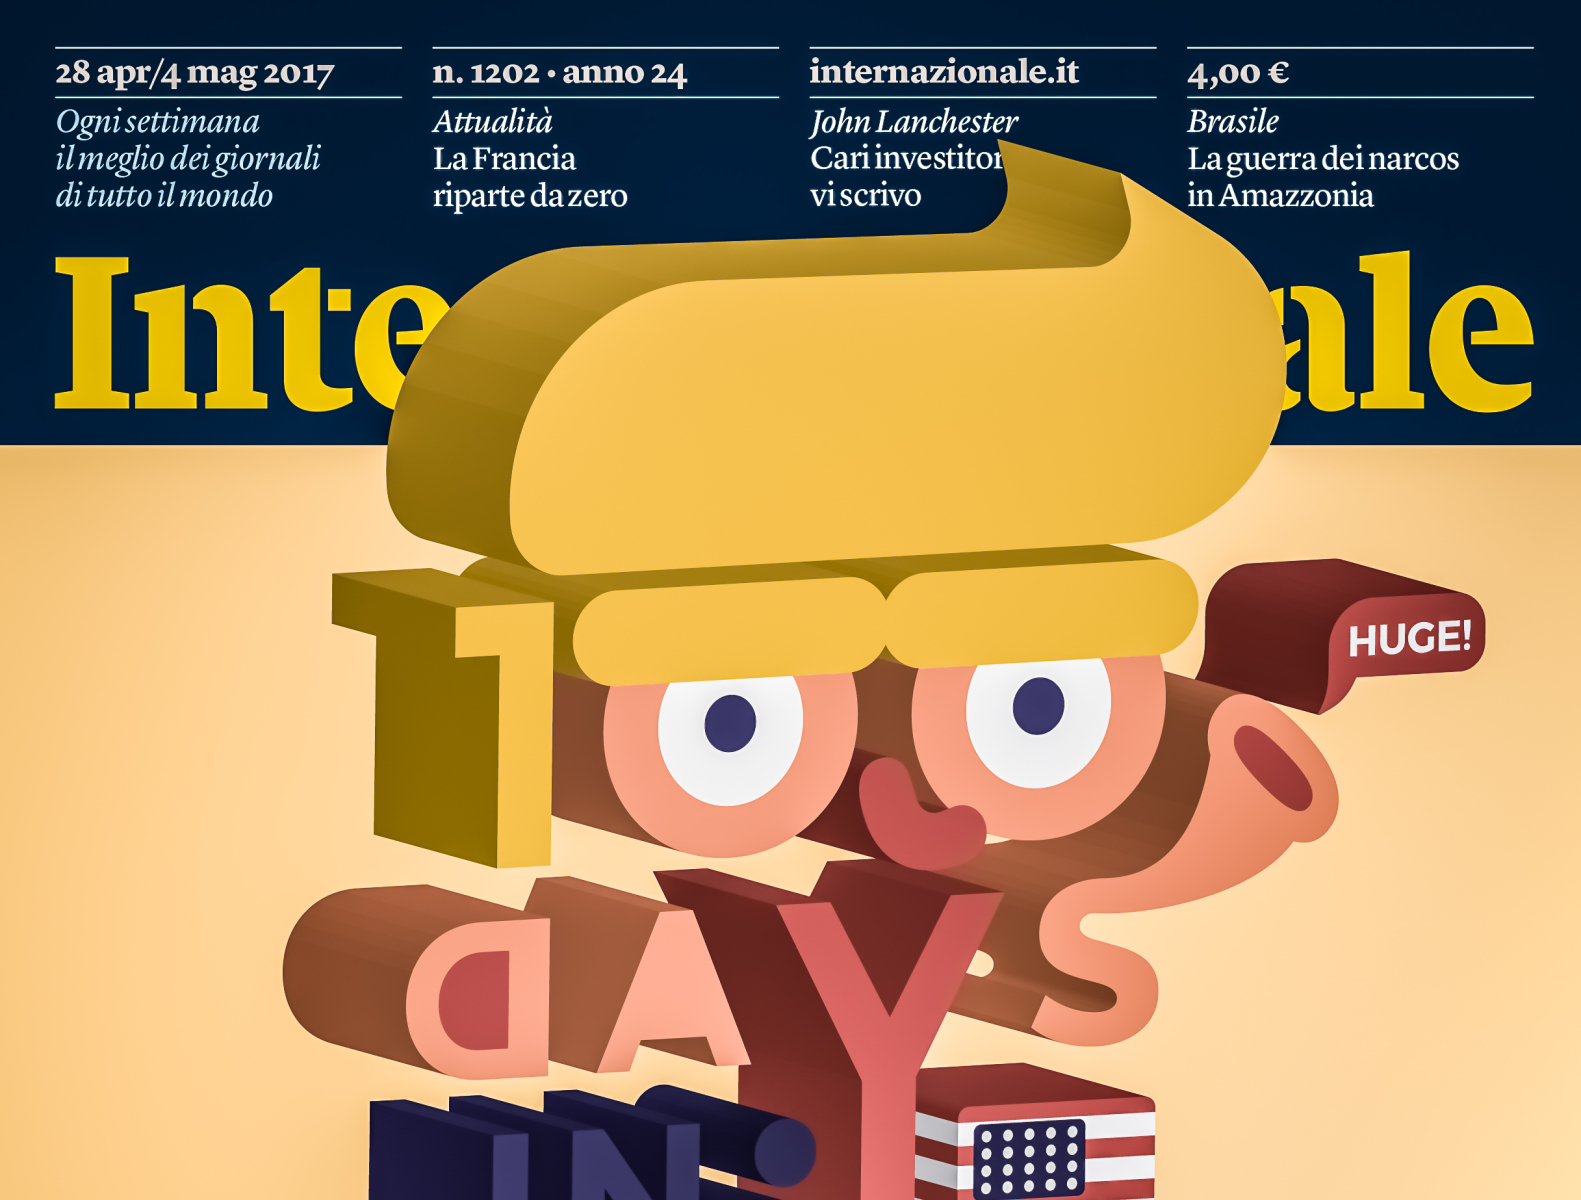 Cover para revista Internazionale - Milán, Italia. cover design design illustration